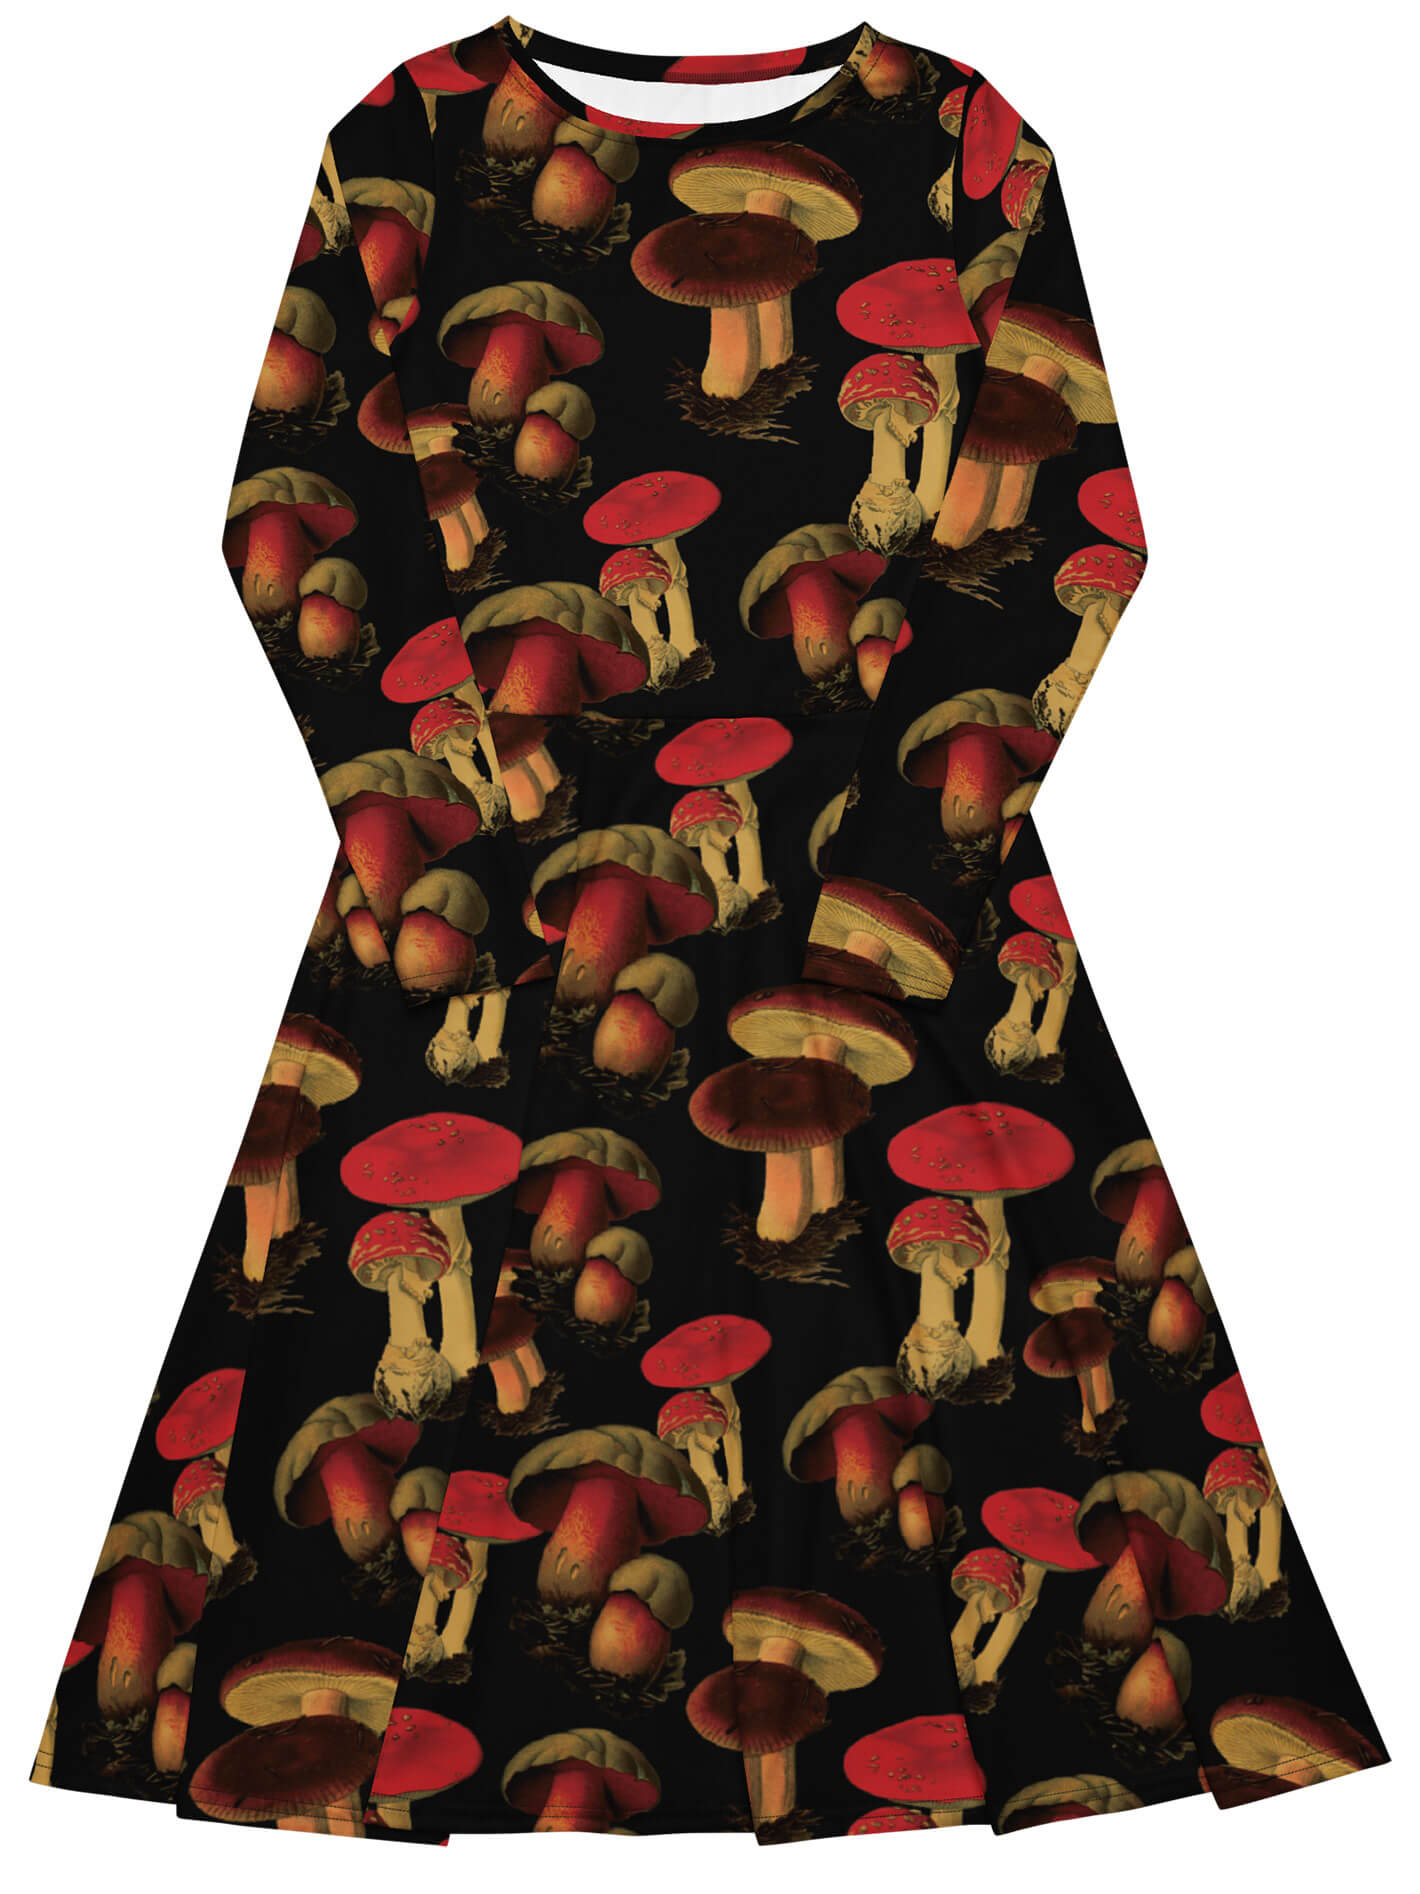 Fanciful fungi midi dress.